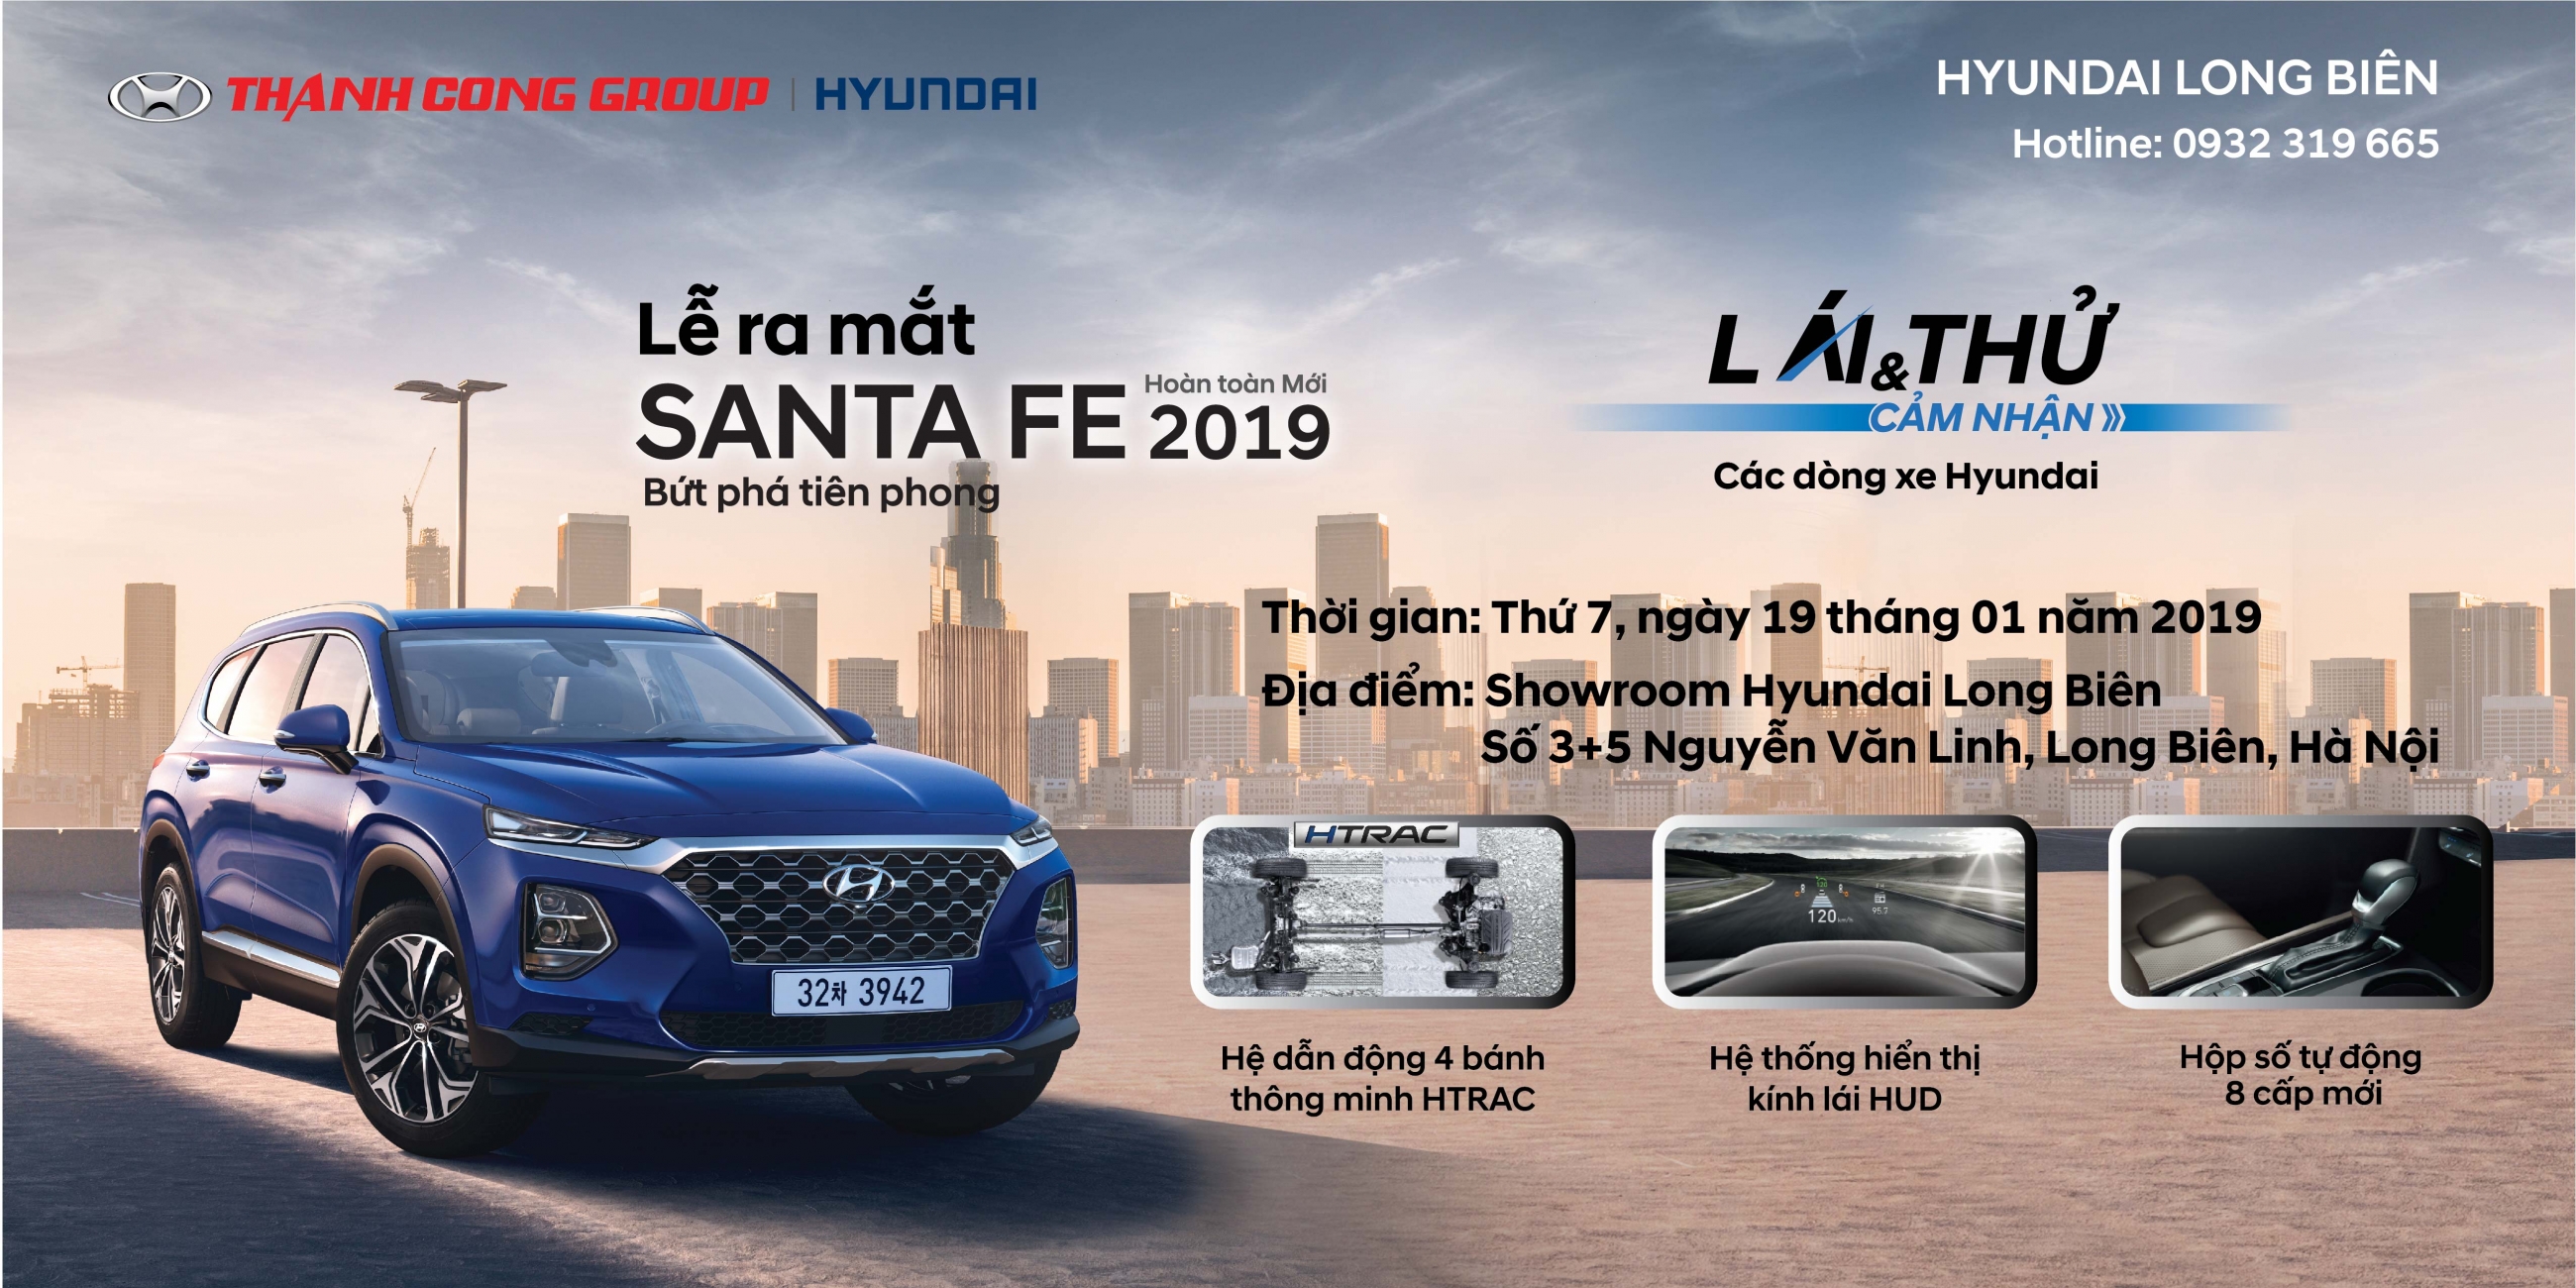 "Lễ ra mắt SantaFe 2019" và "Lái thử - Cảm nhận các dòng xe Hyundai" tại Showroom Hyundai Long Biên, thứ 7, ngày 19/01/2019